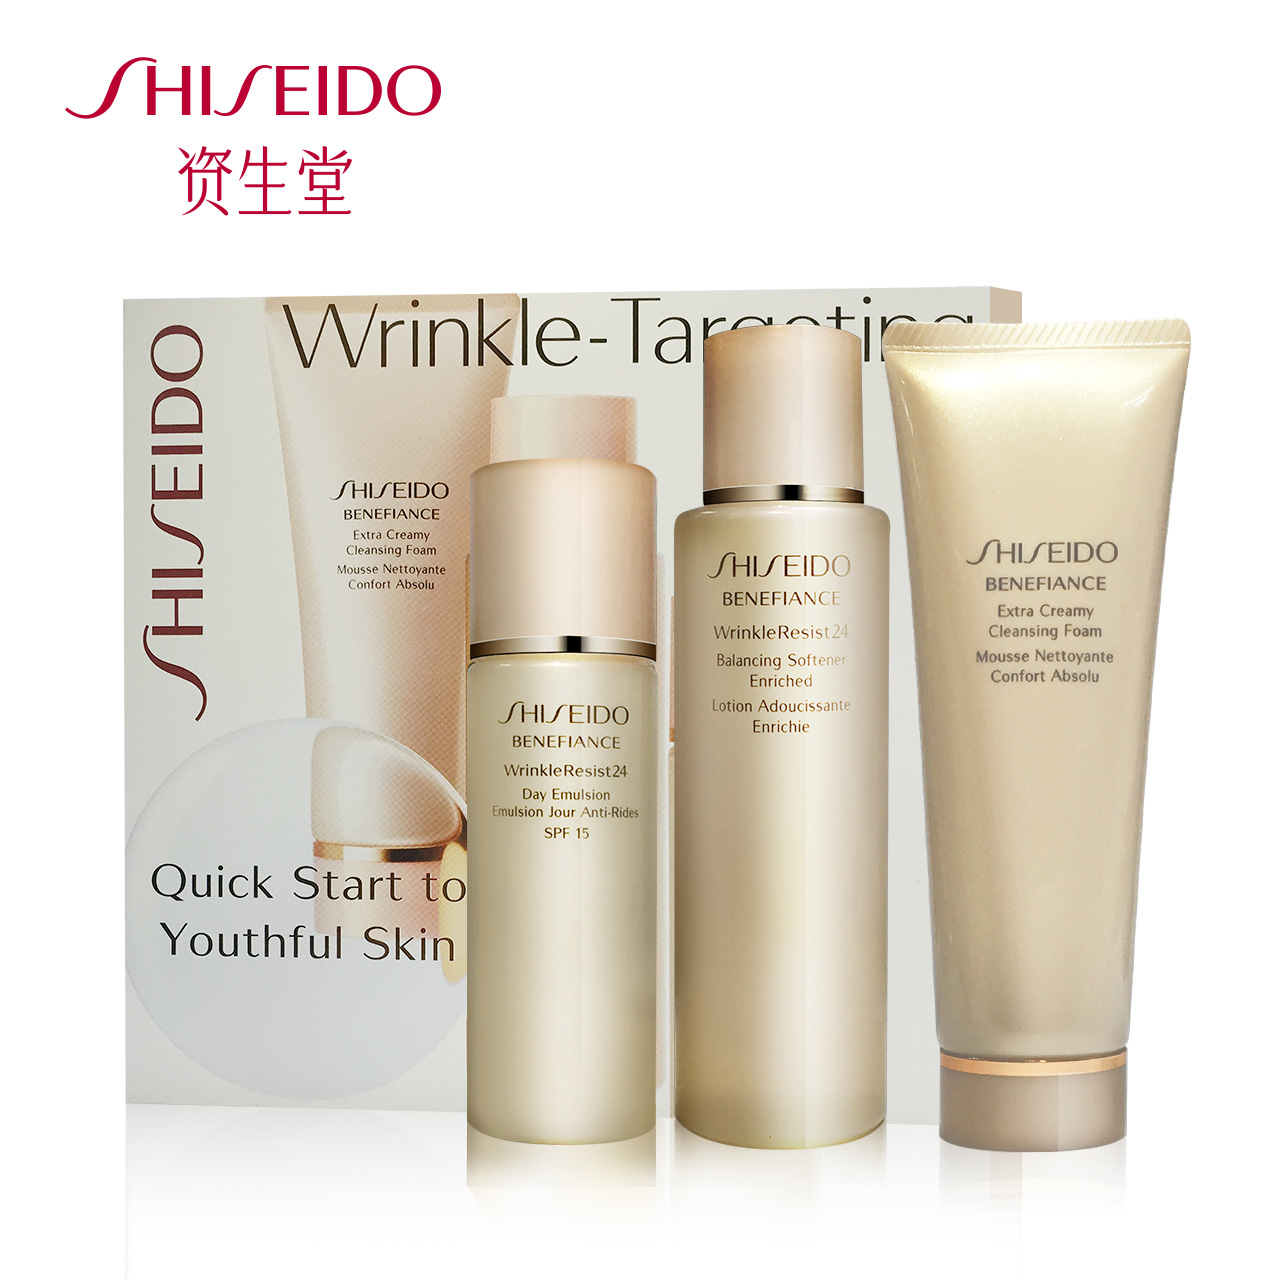 shiseido资生堂盼丽风姿基础护理套装 紧致肌肤 入门套装折扣优惠信息